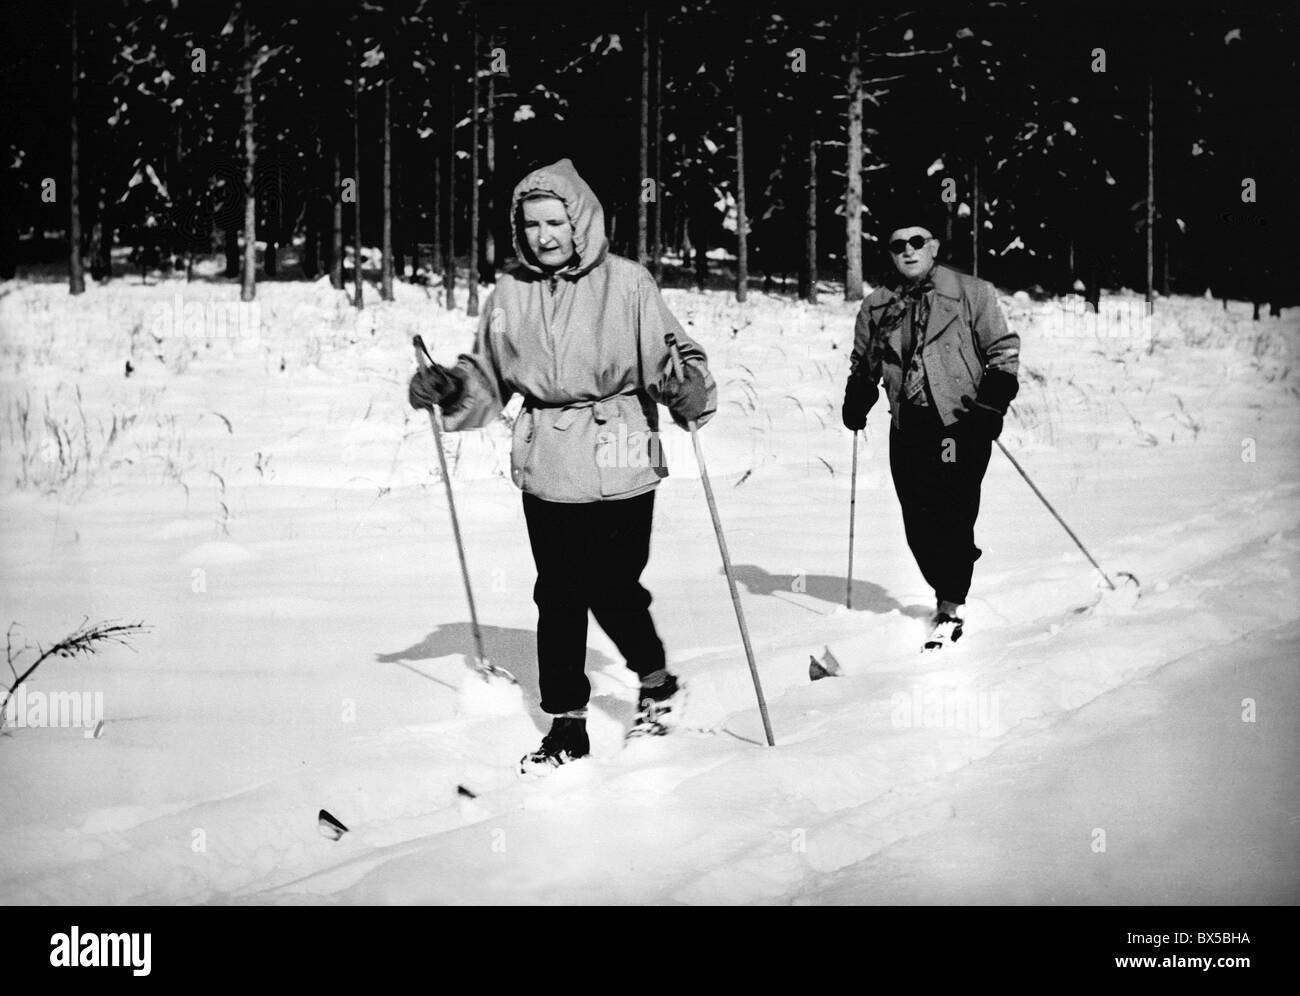 La Tchécoslovaquie Lany 1947. Le président Edvard Benes avec sa femme Hana ski près de sa retraite présidentielle. CTK Banque D'Images